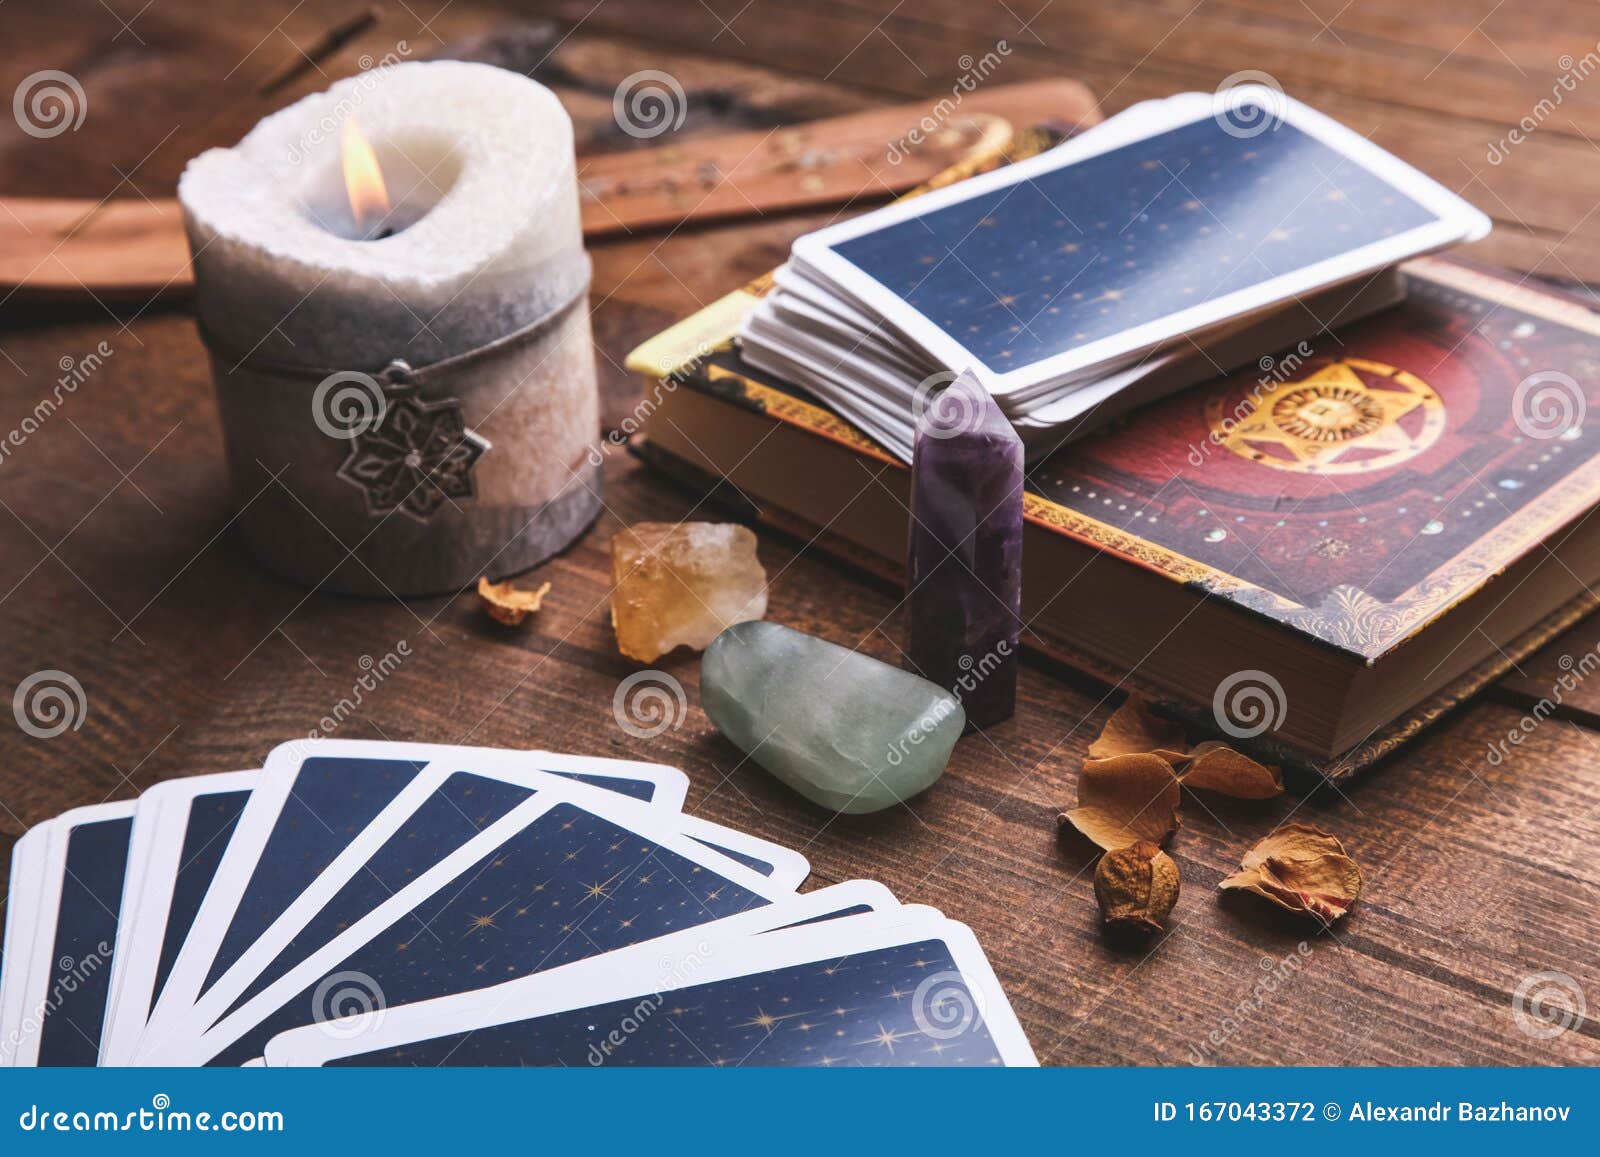 https://thumbs.dreamstime.com/z/cartes-de-tarot-cartomancie-et-accessoires-magiques-dans-un-contexte-en-bois-brun-concept-paranormaux-167043372.jpg